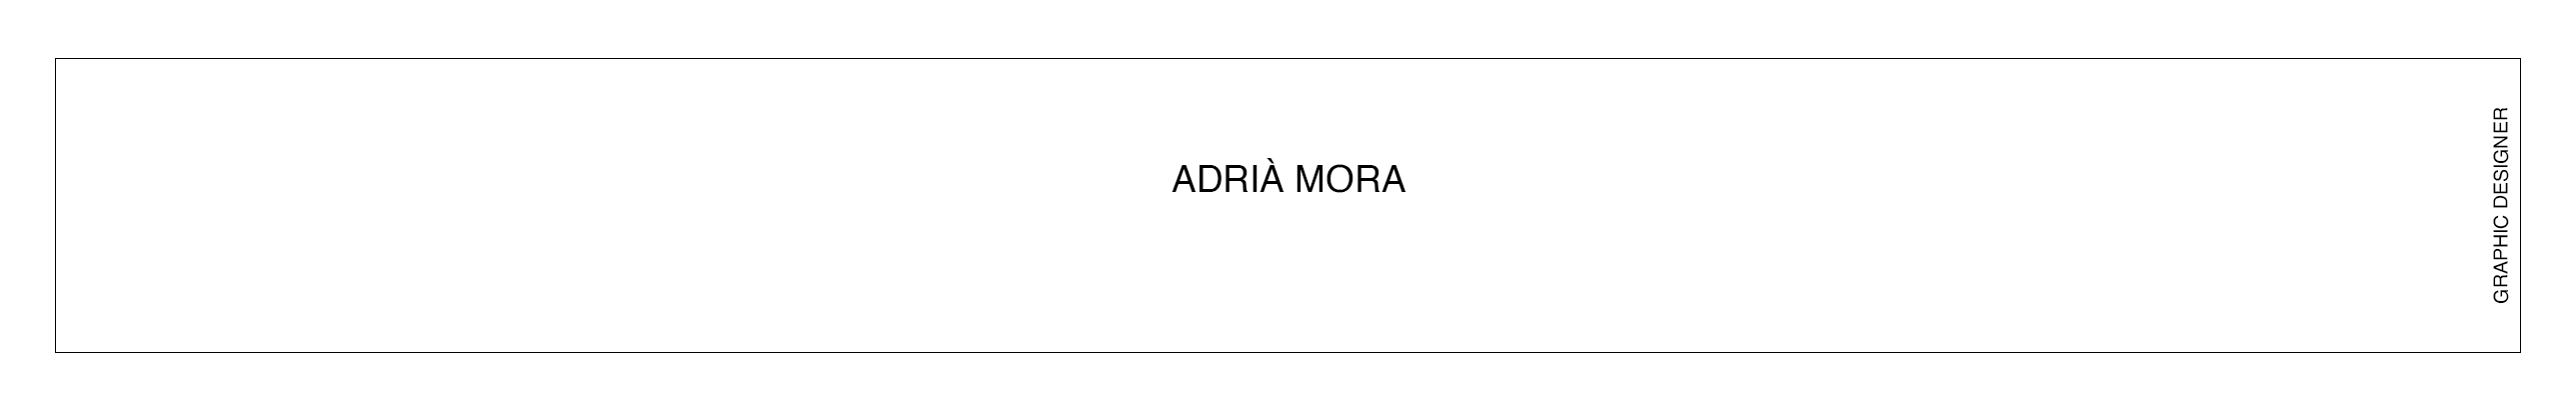 Adria Mora's profile banner